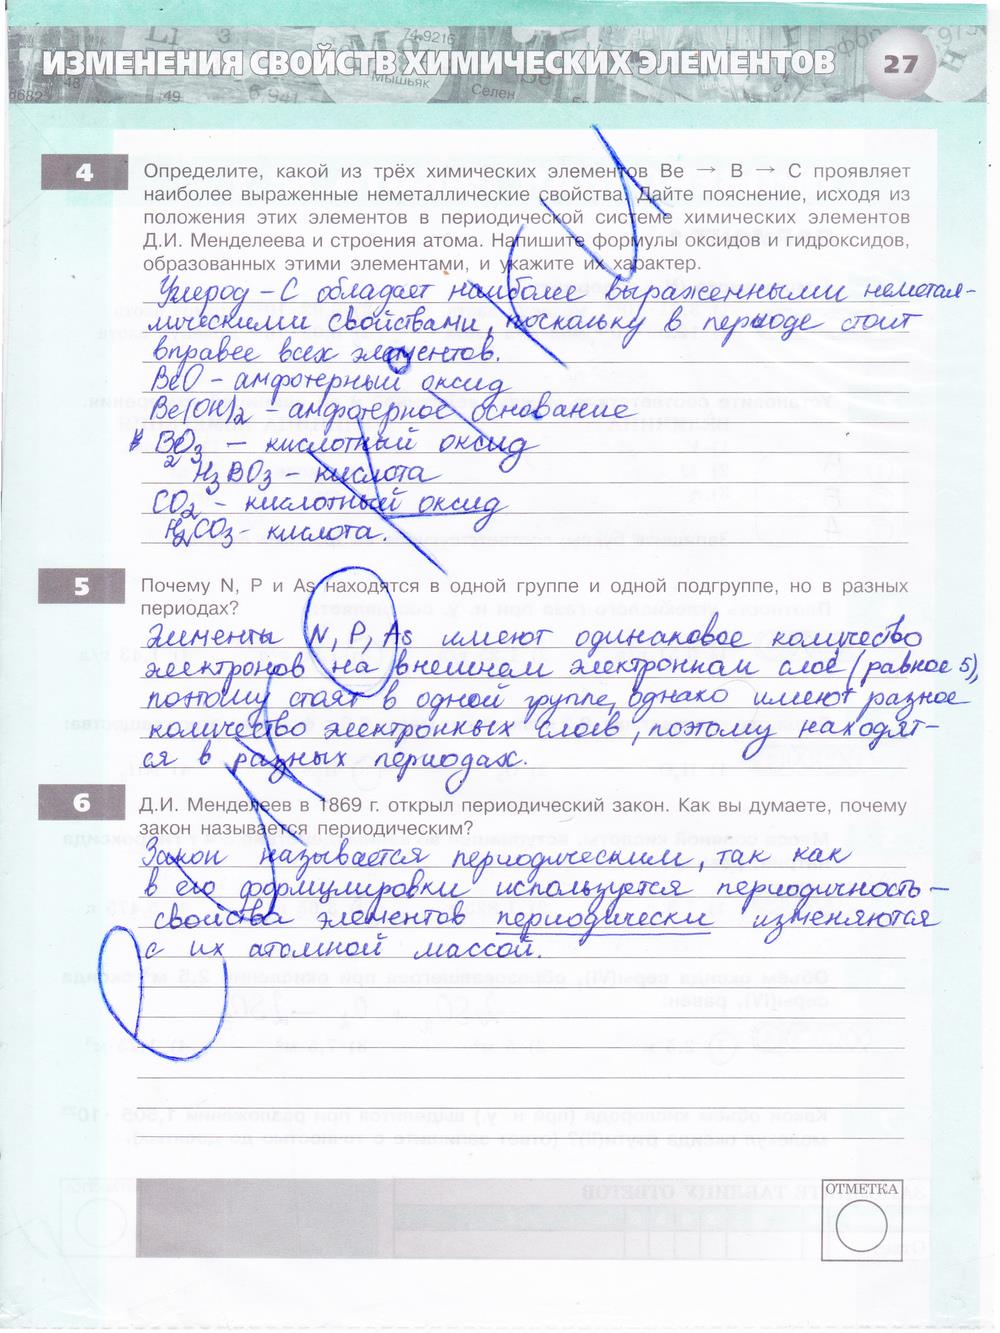 гдз 8 класс тетрадь-экзаменатор страница 27 химия Бобылева, Бирюлина